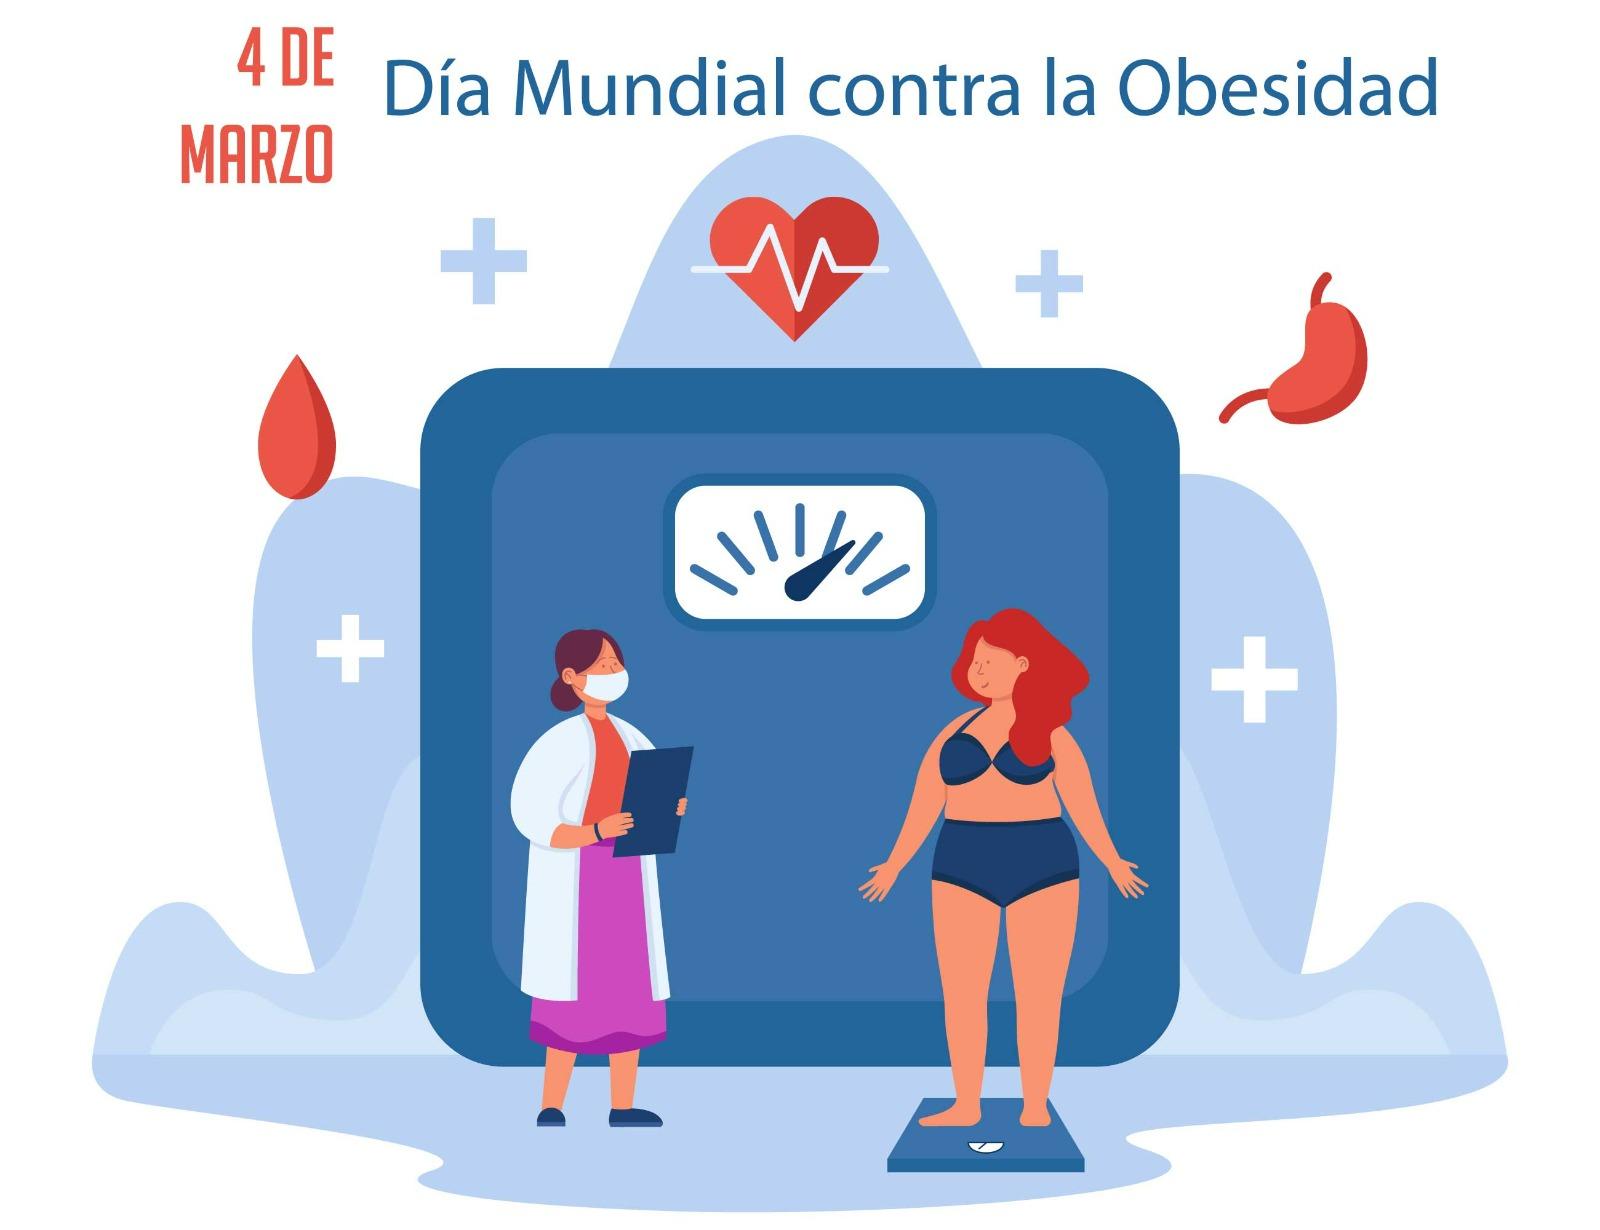 Cada 4 de marzo se celebra el Día Mundial contra la Obesidad, una enfermedad que, según datos de la Organización Mundial de la Salud (OMS), alcanza proporciones epidémicas a nivel mundial.